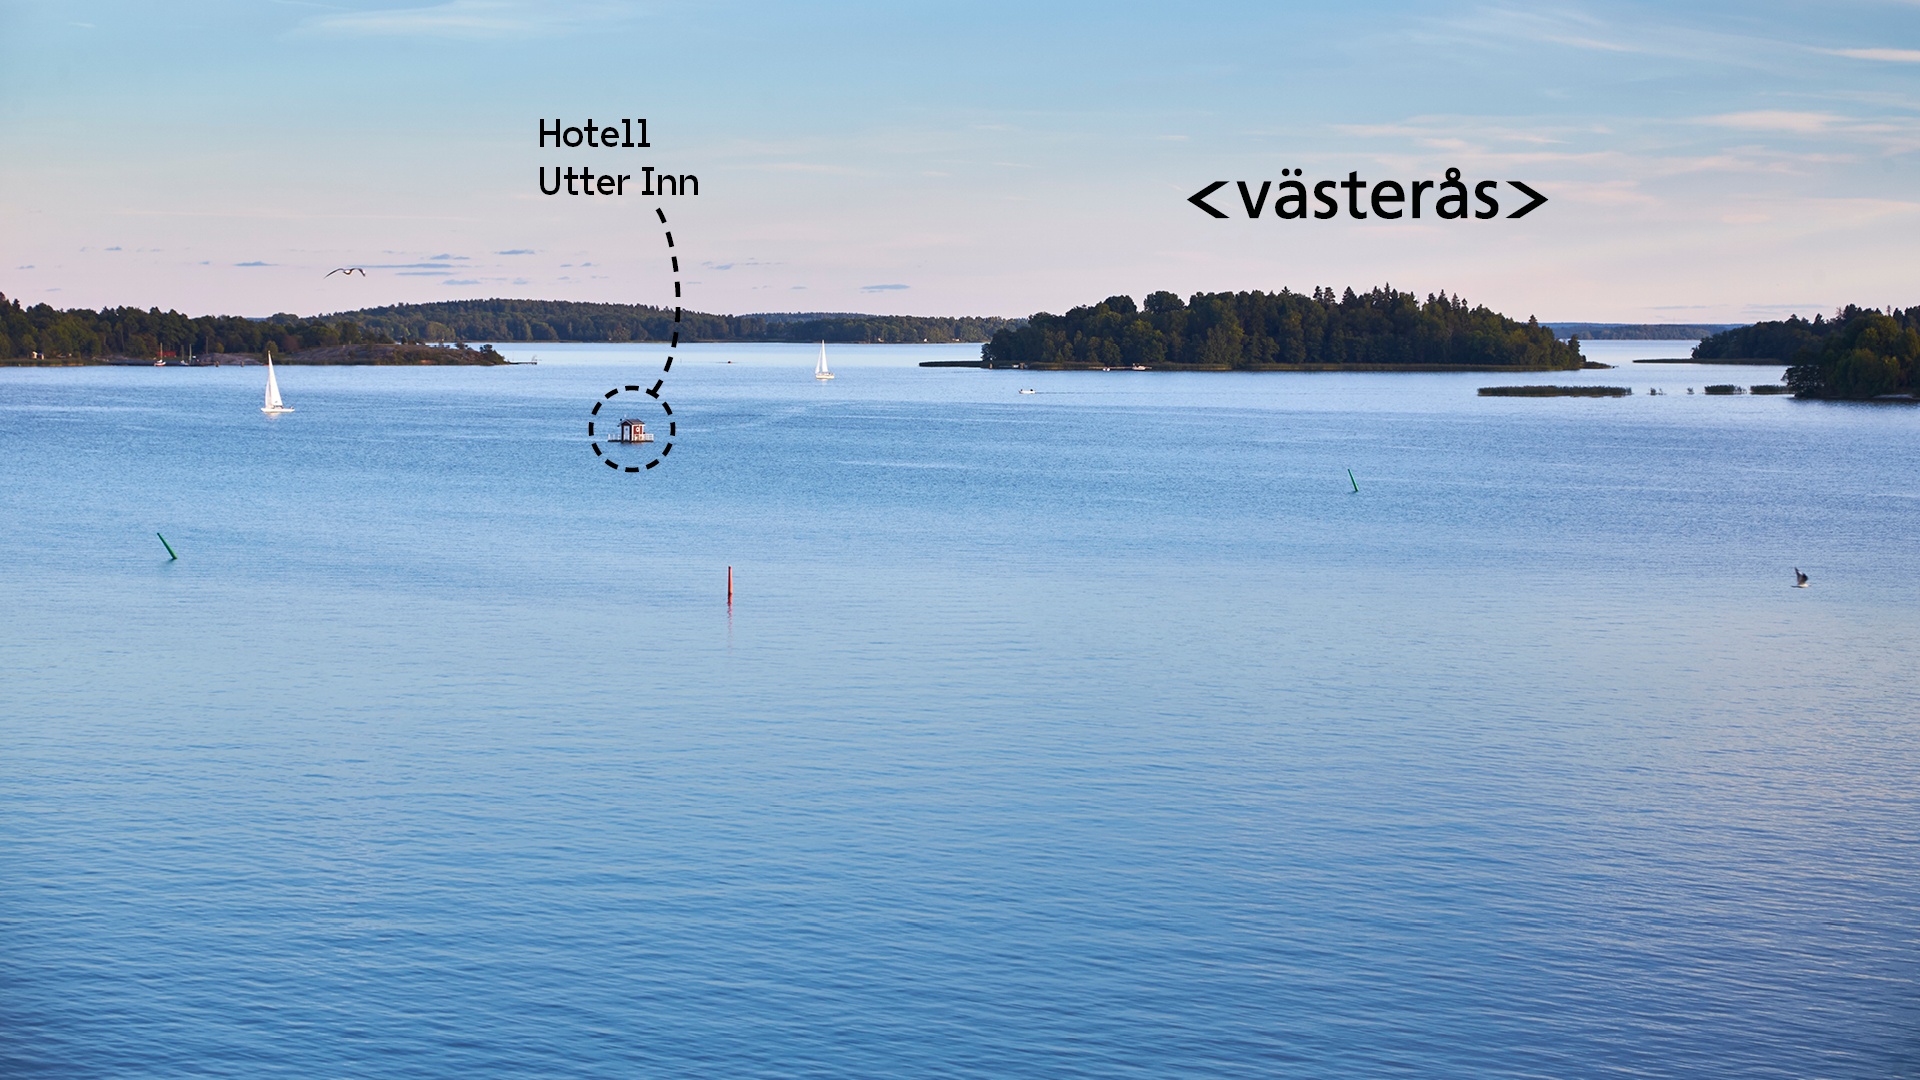 Vy över Mälaren med hotel Utter Inn utmarkerat. Fotograf: Pia Nordlander